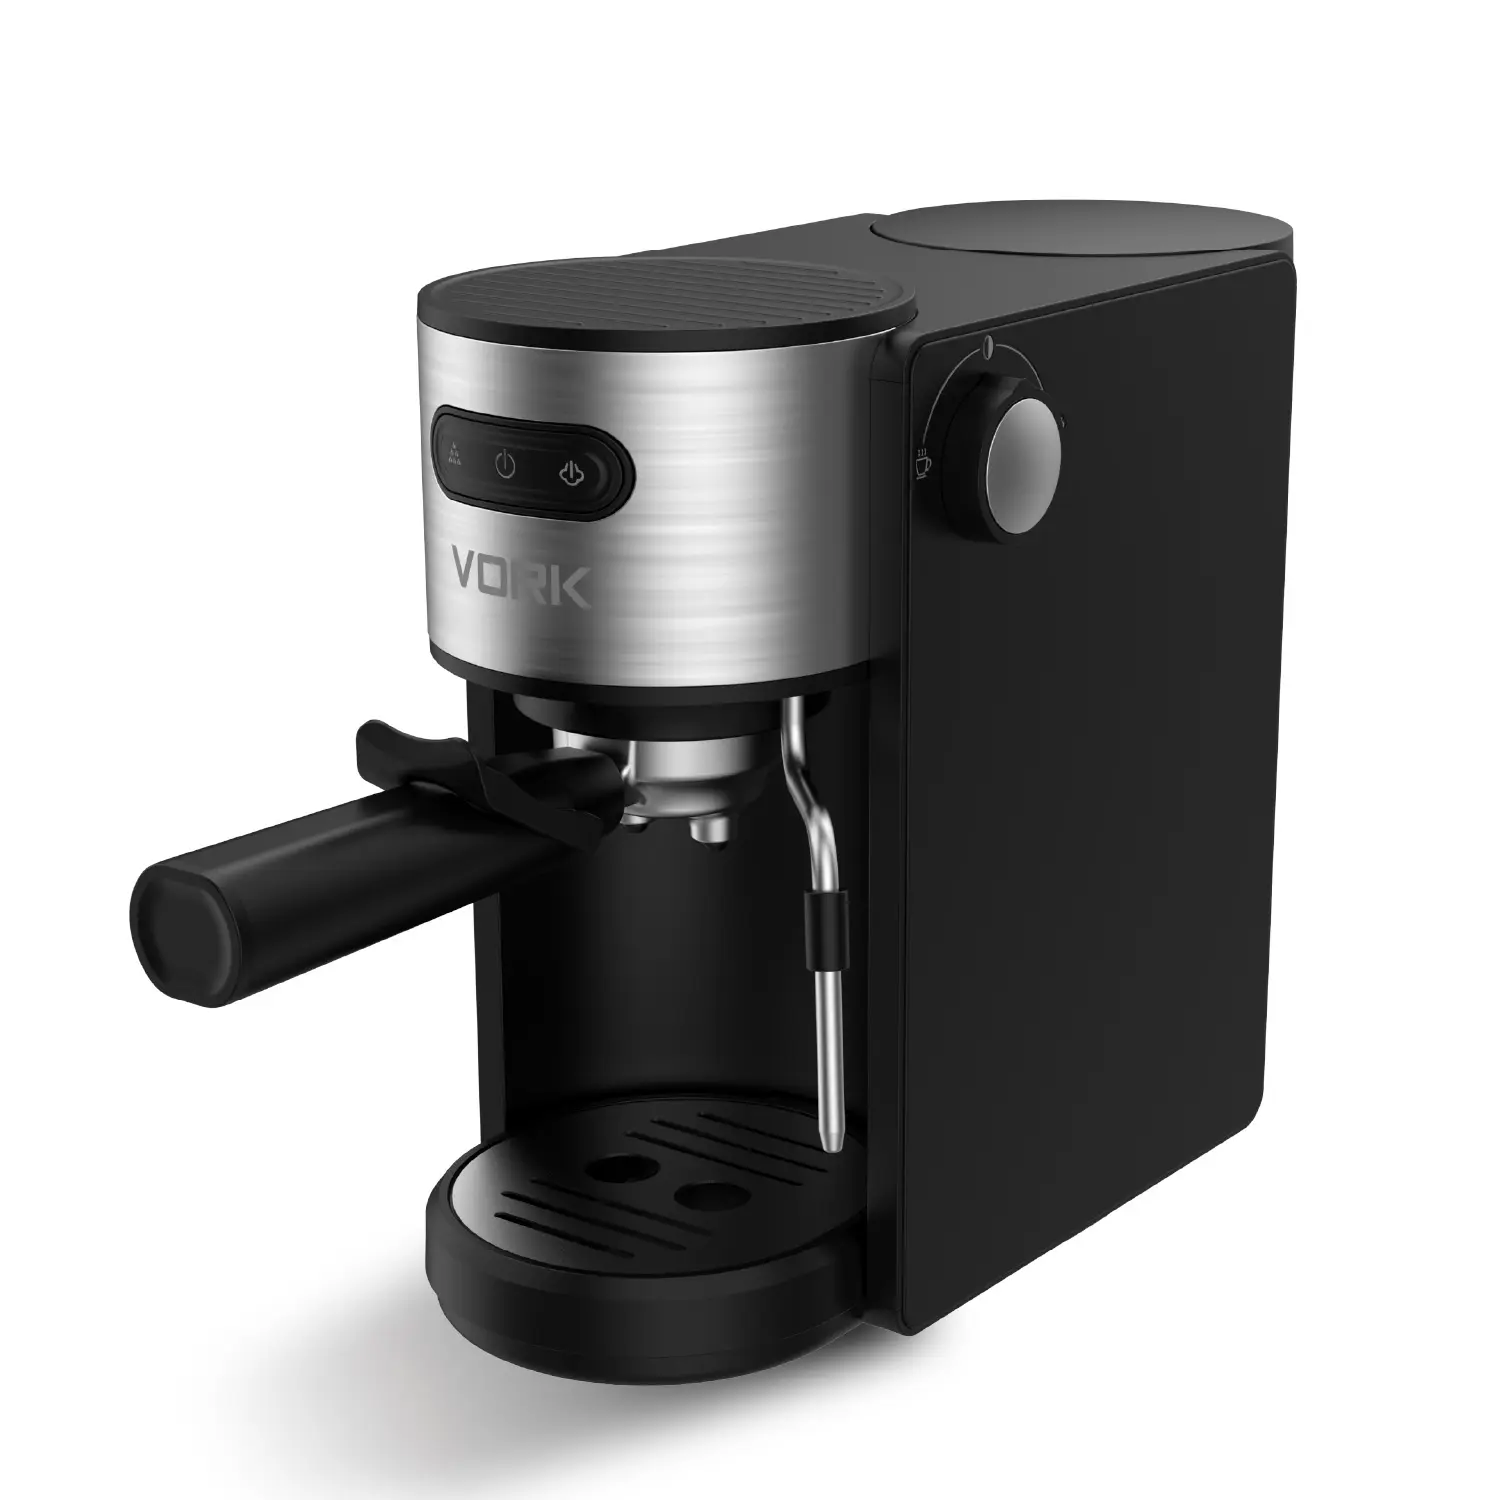 صانعة قهوة بتصميم جديد 20 بار مضخة ضغط كابتشينو صانعة كهربائية ODM لمدة عامين 1.3 لتر أولكا